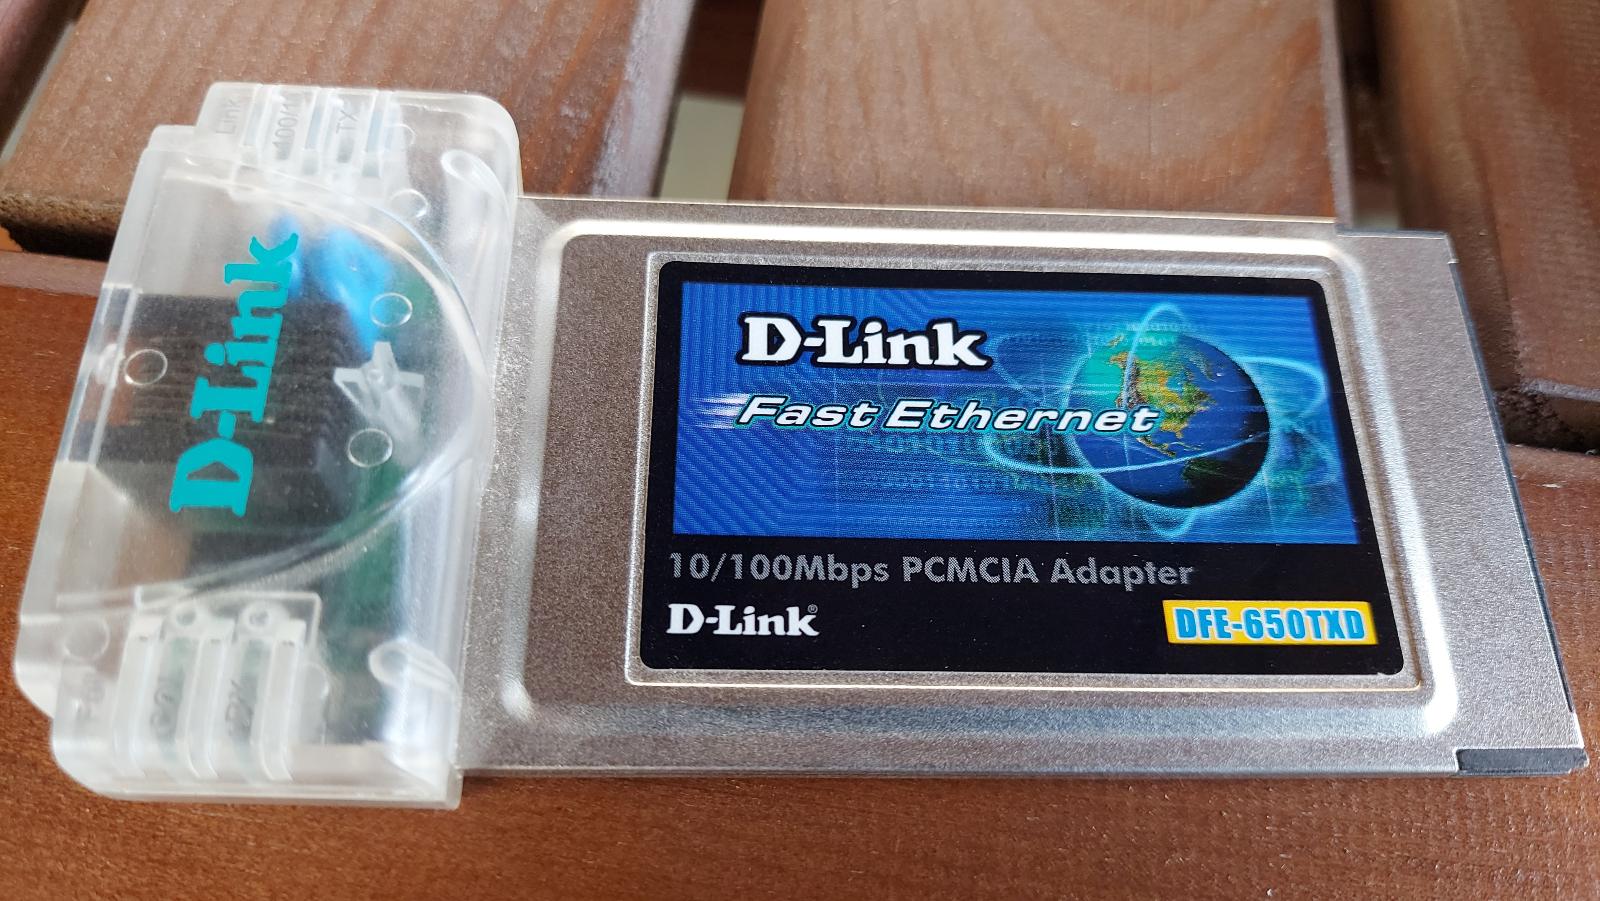 PCMCIA sitova karta DFE-650TXD - Príslušenstvo k notebookom